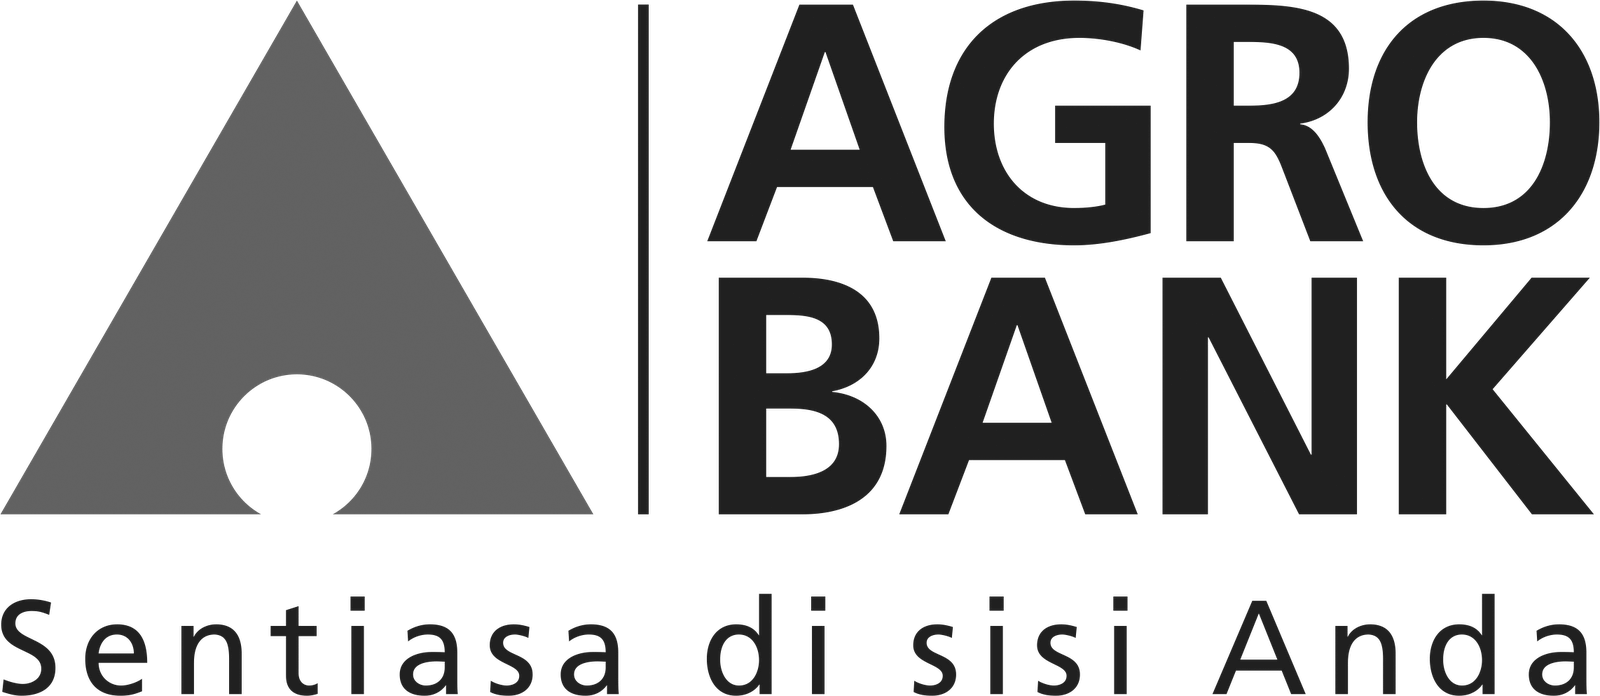 agro bank